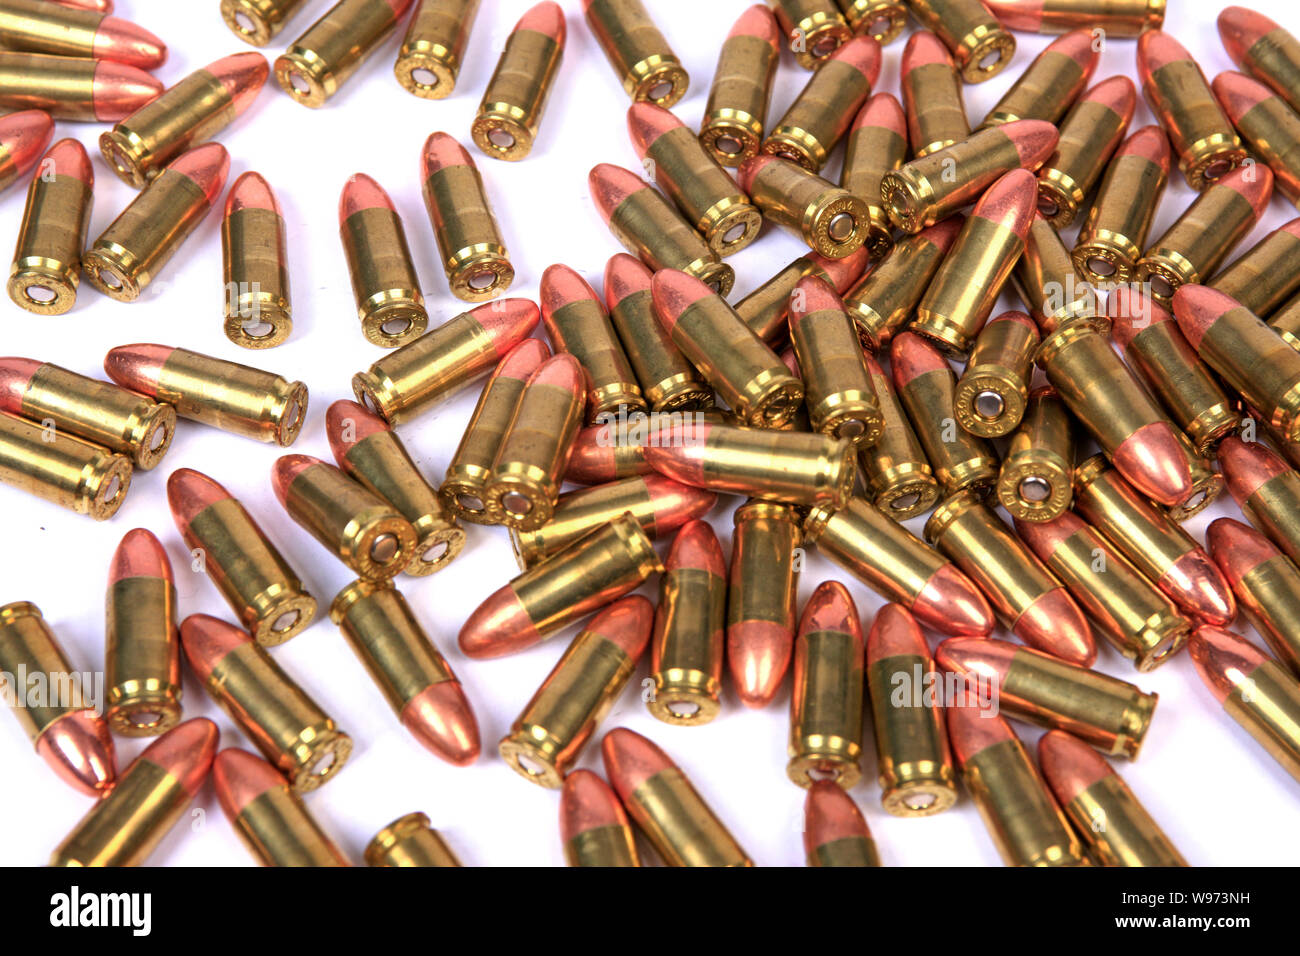 100 Umläufe von 9 mm Luger Messing mit Kupfer Tipps ammuntion Stockfoto